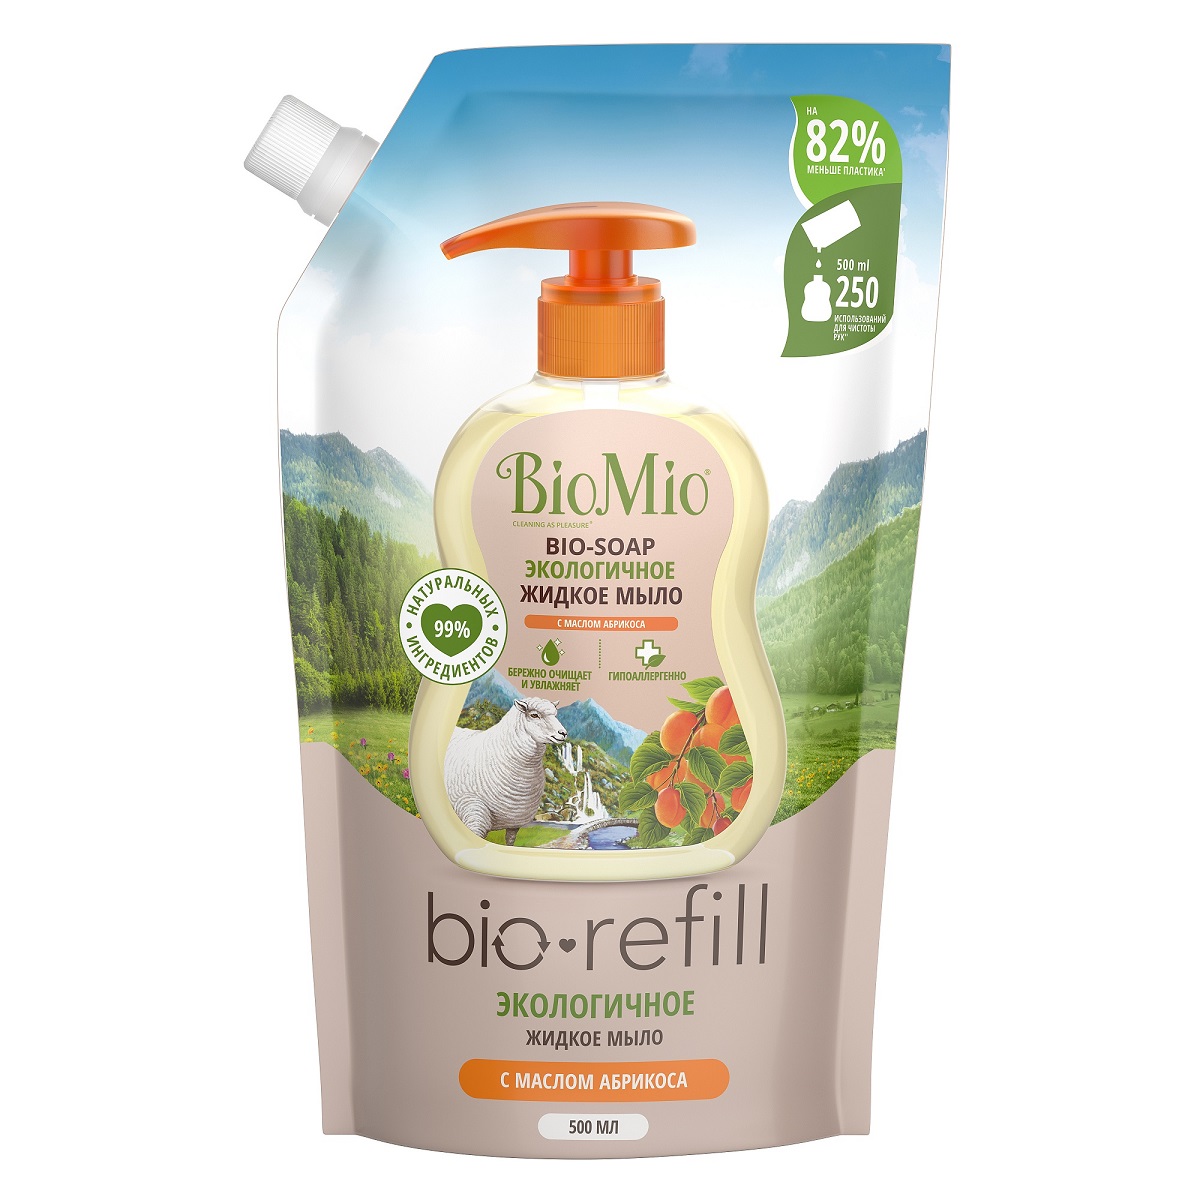 BioMio Экологичное жидкое мыло с маслом абрикоса (сменный бл